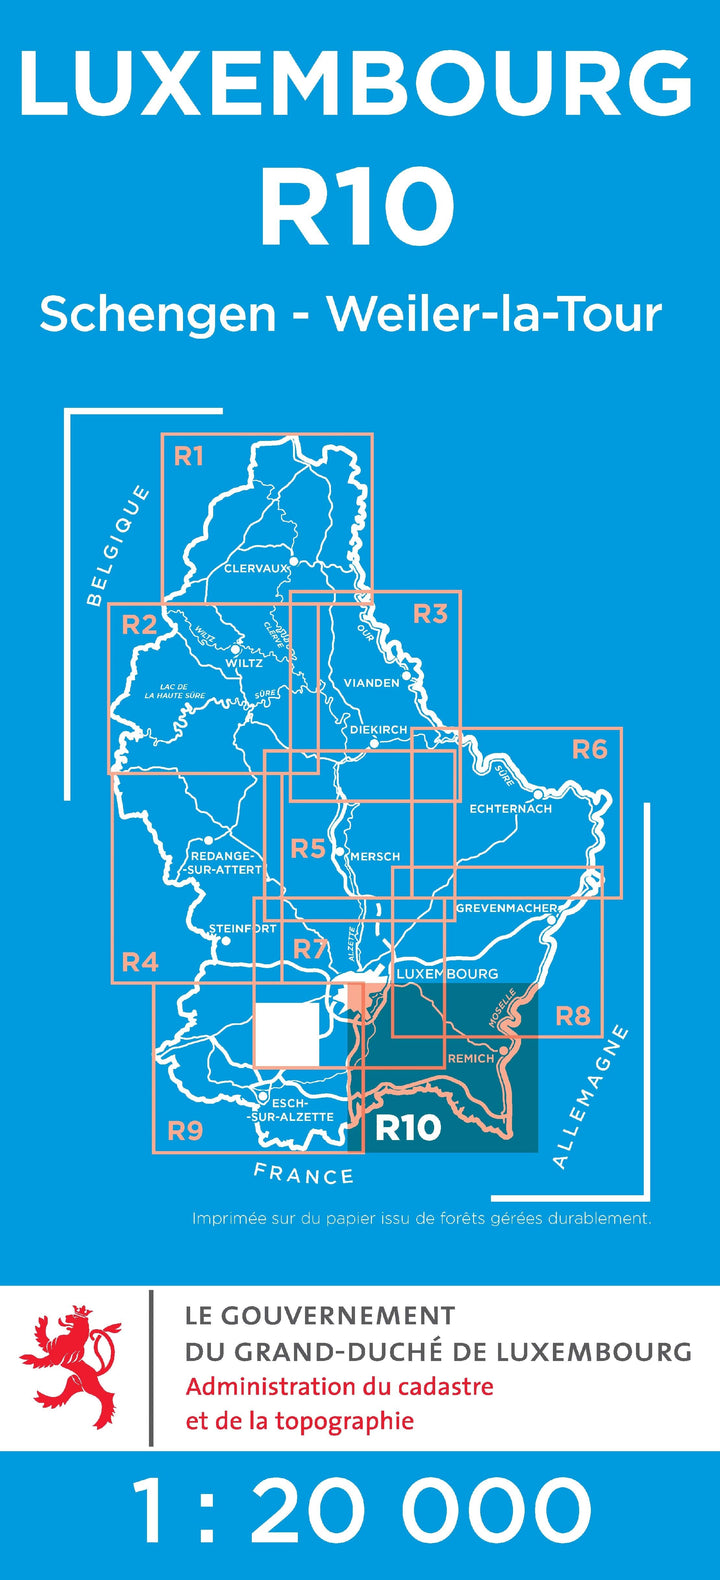 Carte topographique n° R10 - Schengen, Weiler-la-tour (G.D de Luxembourg) carte pliée Service topographique du Luxembourg 